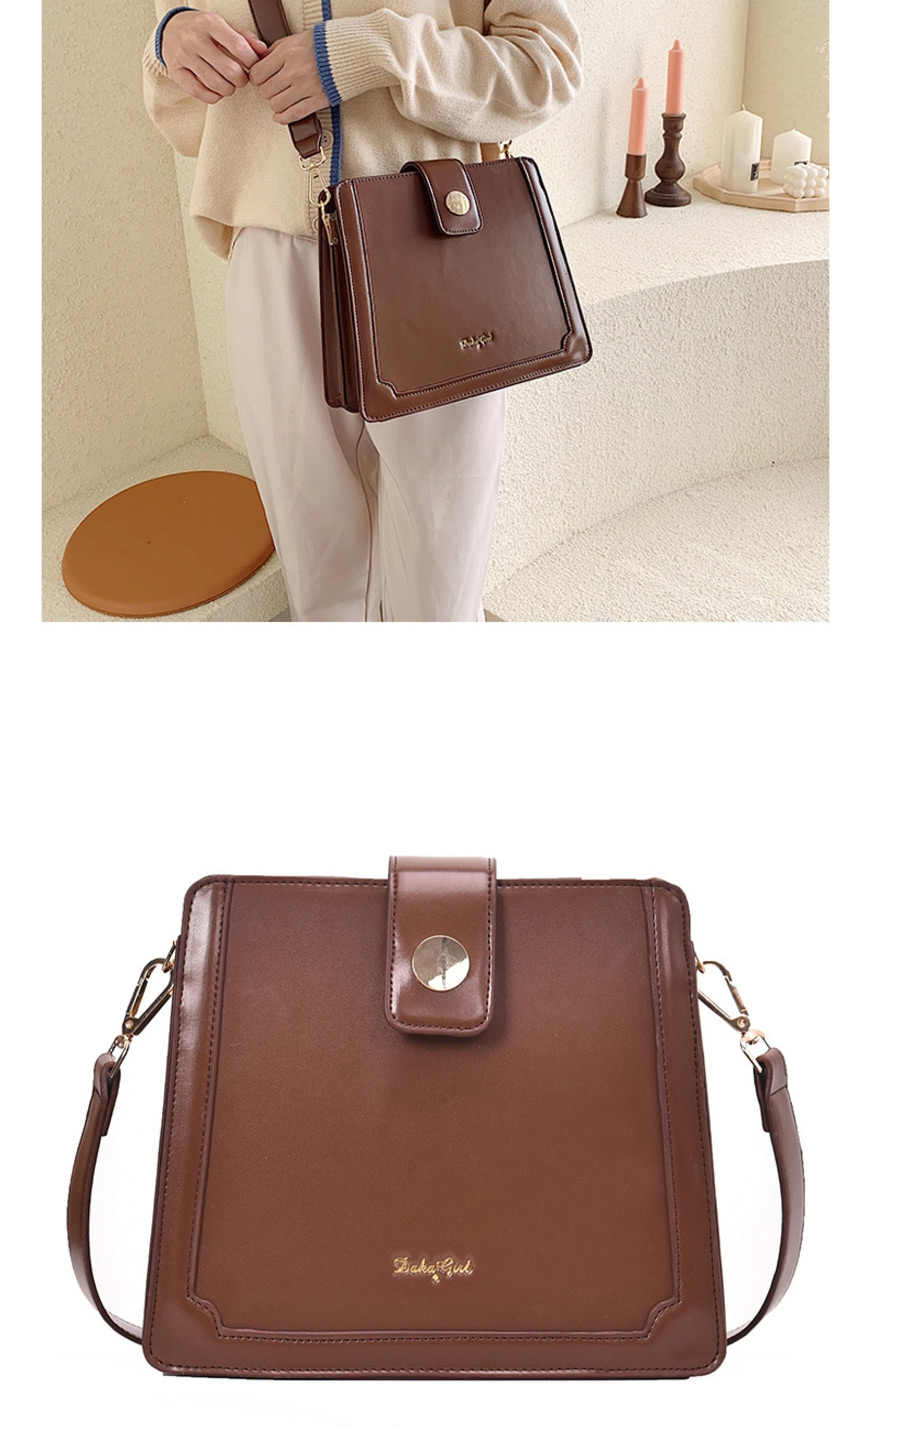 Fashion Red-brown Broadband Single Shoulder Bag,Shoulder bags